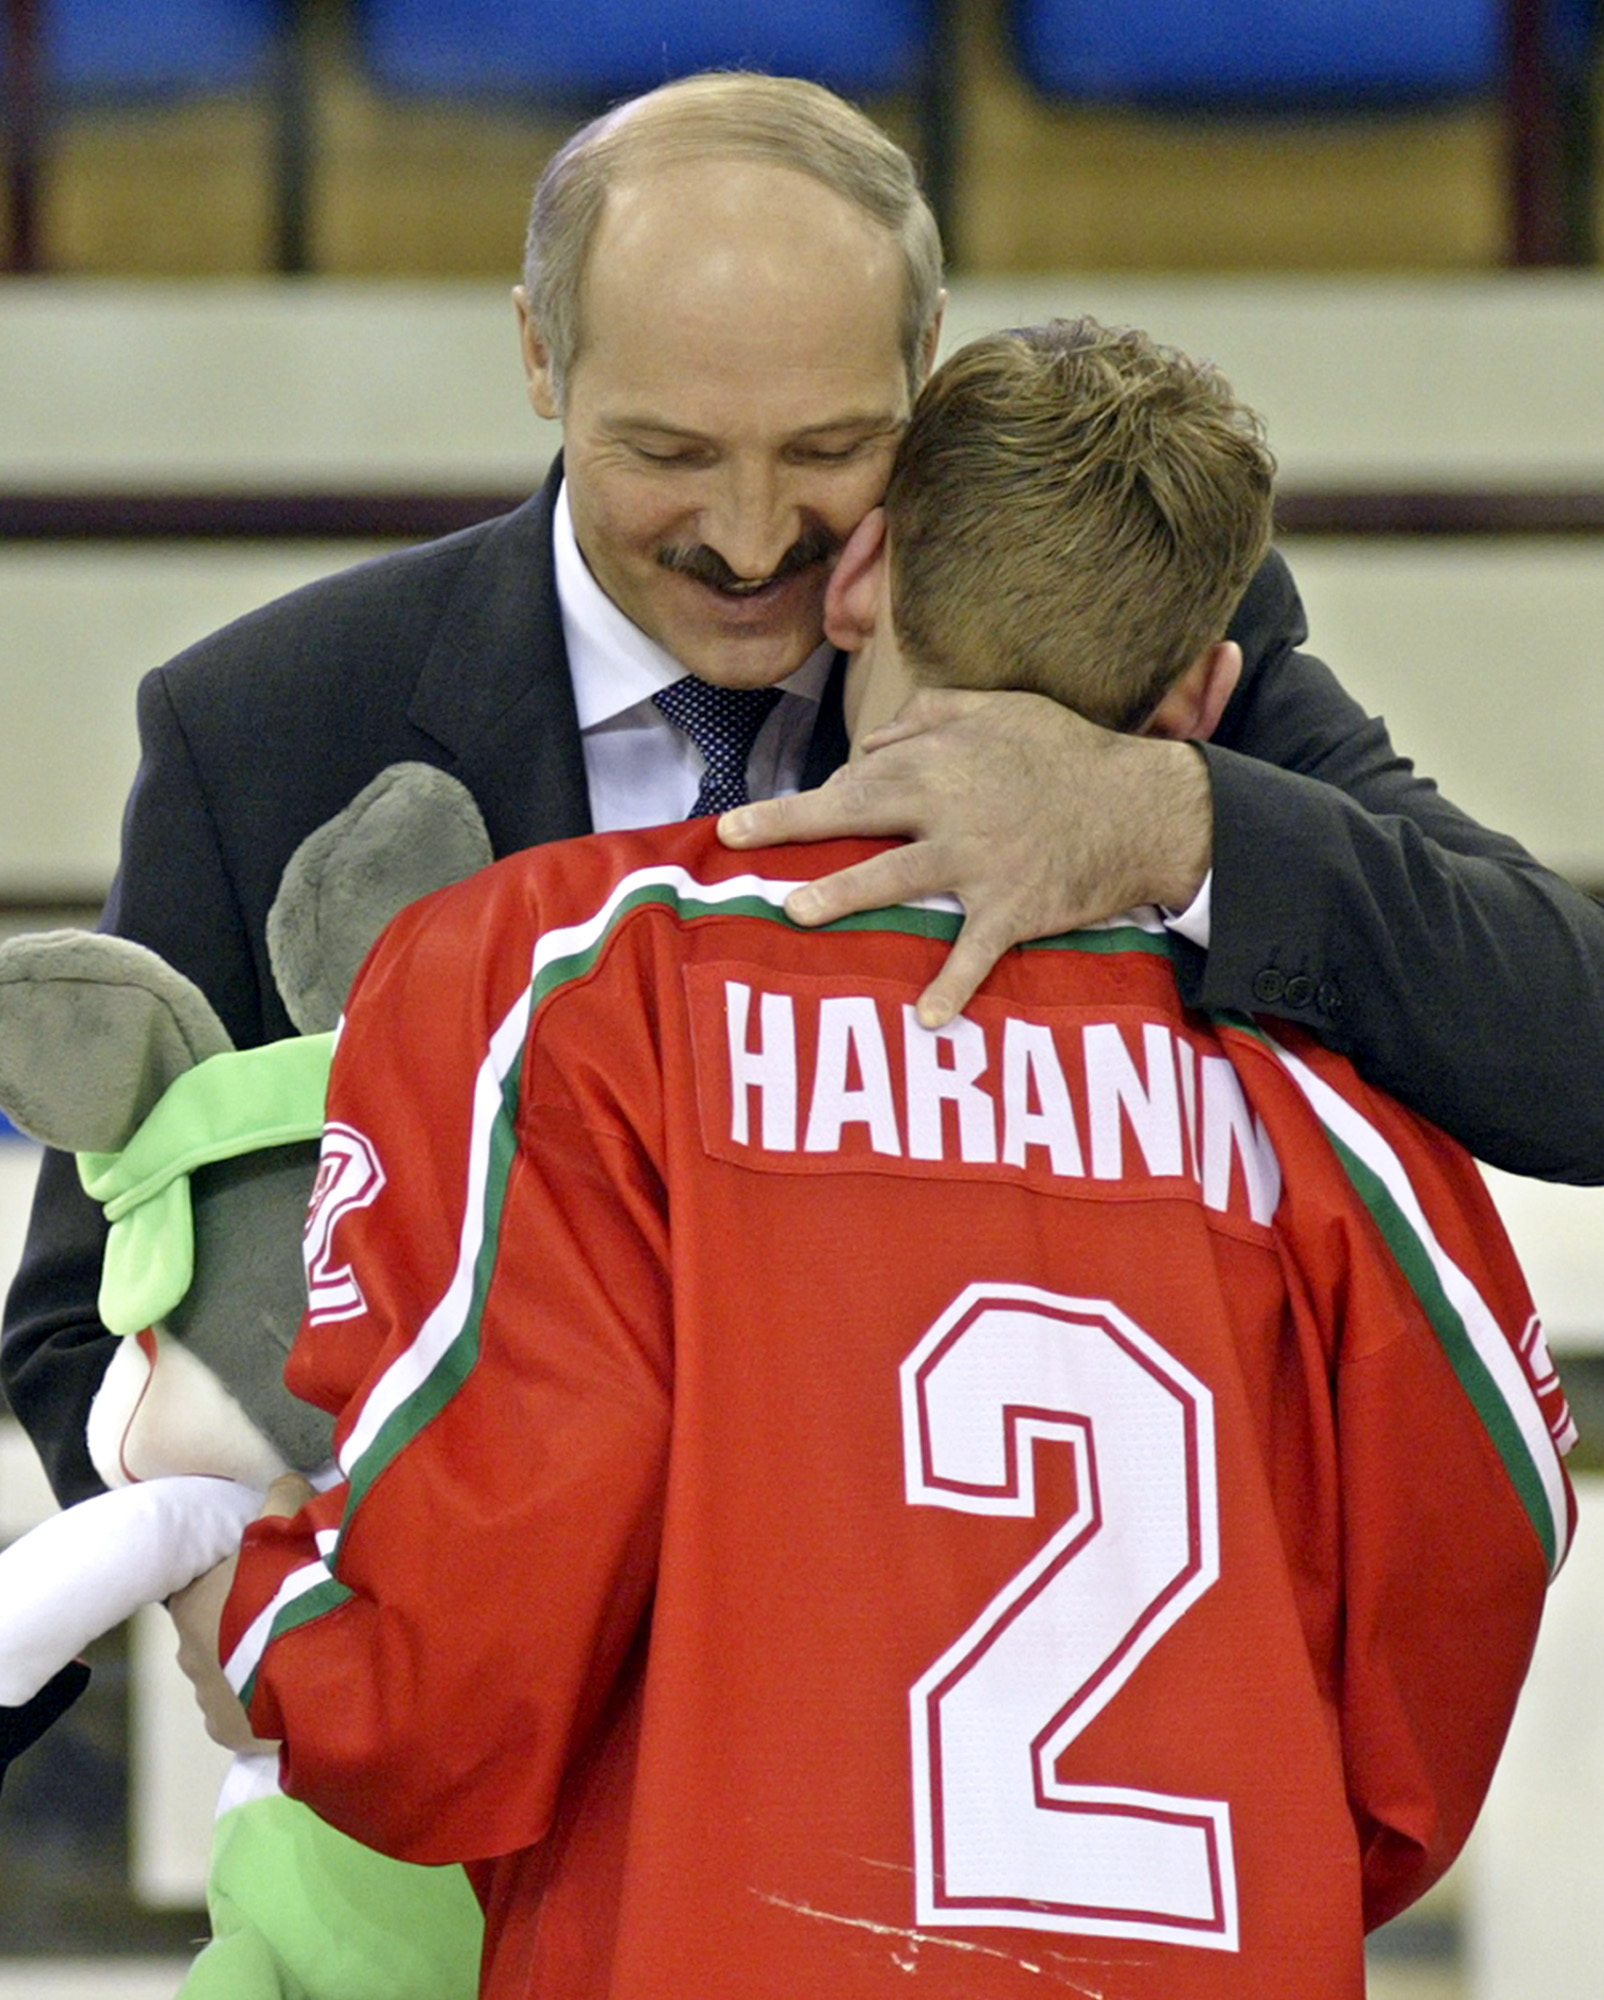 Vitryssland var värd för U18-VM år 2004 - med president Lukasjenko som prisutdelare. Kommer den hockeytokige diktatorn att få uppleva ett hemma-VM 2014?